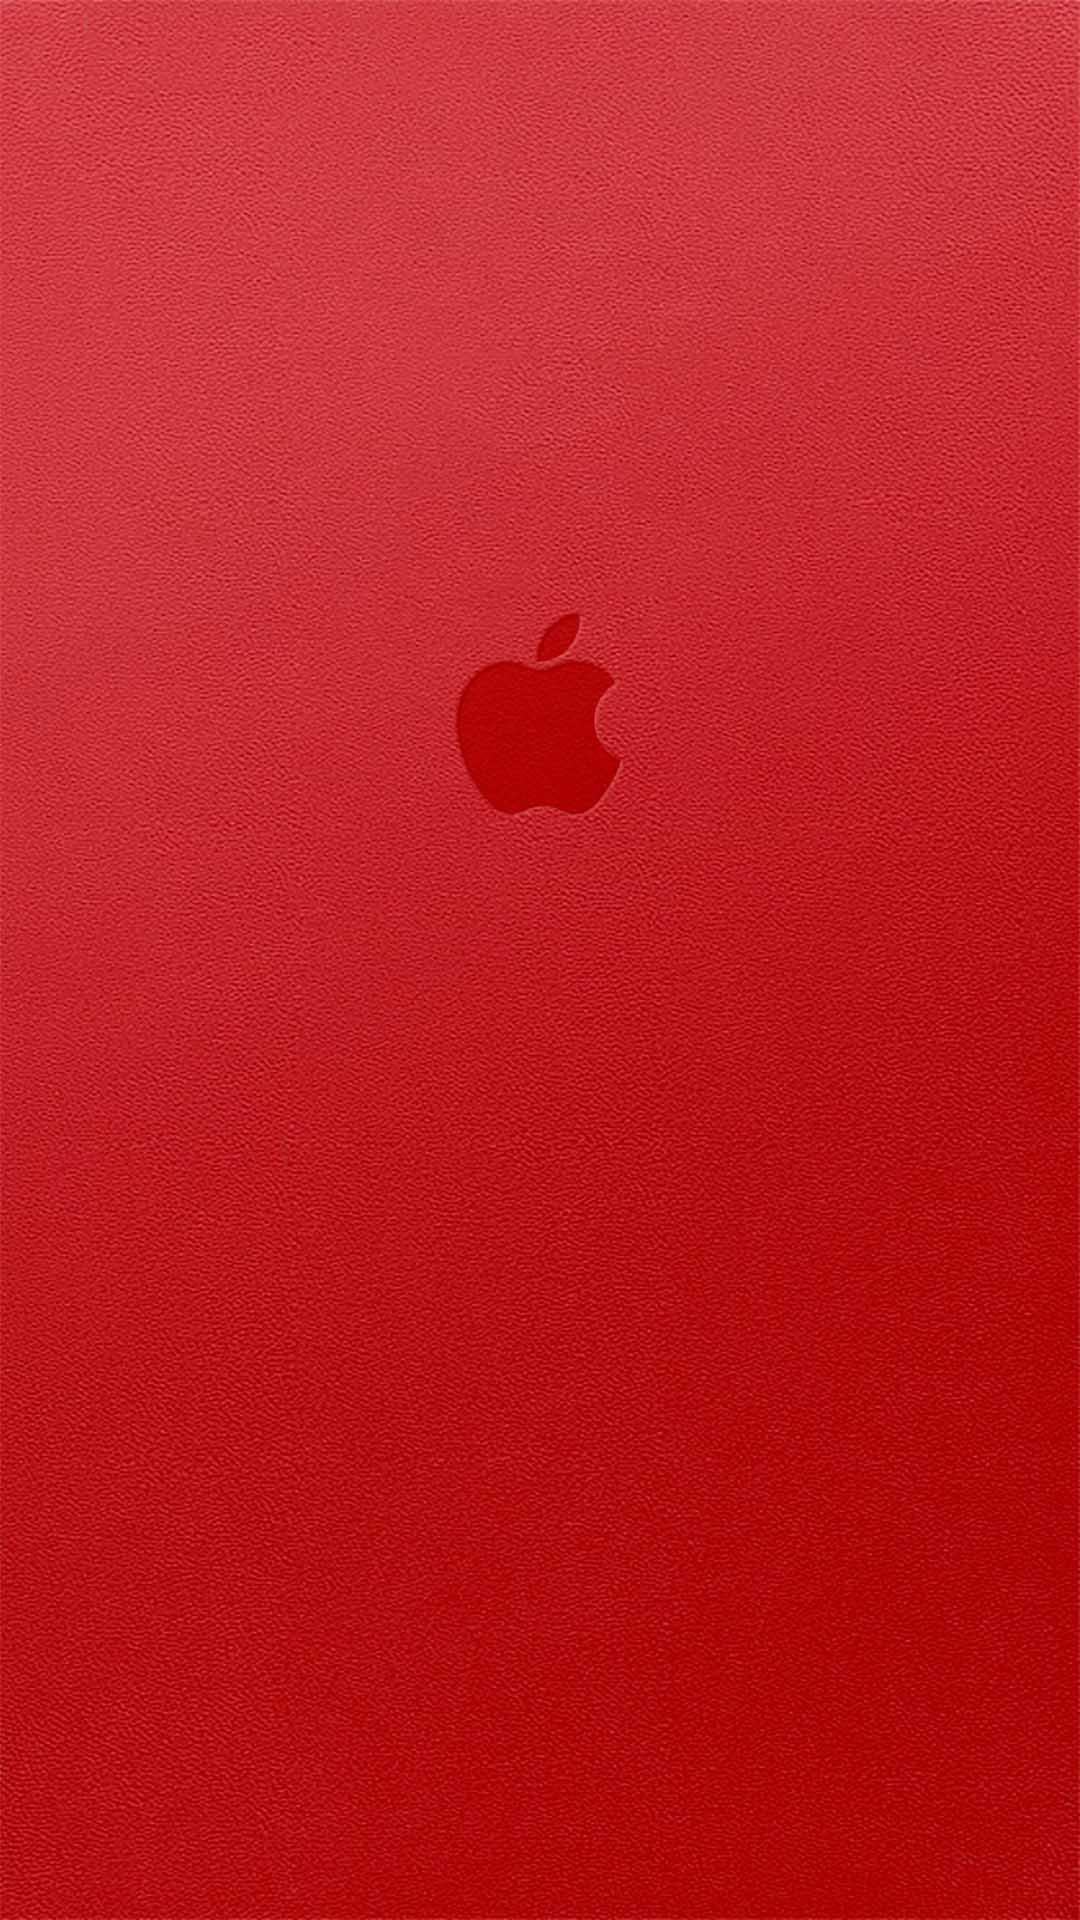 Red シンプルでかっこいいiphone壁紙 Iphone12 スマホ壁紙 待受画像ギャラリー